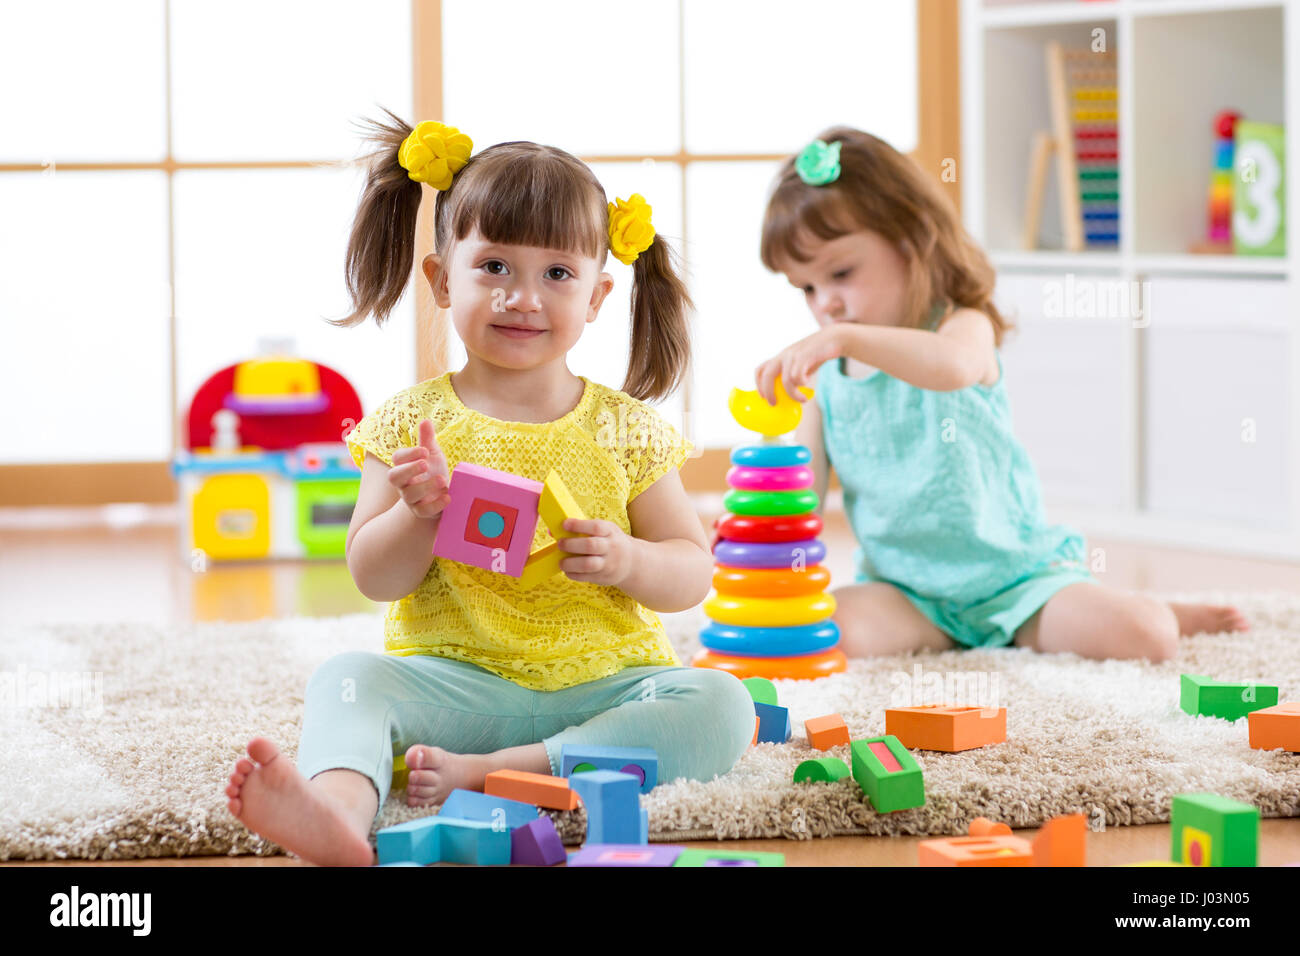 Kinder spielen mit Bausteinen zusammen. Pädagogische Spielwaren für Vorschule und Kindergarten Kind. Kleine Mädchen bauen Spielzeug daheim oder Kindertagesstätten. Stockfoto